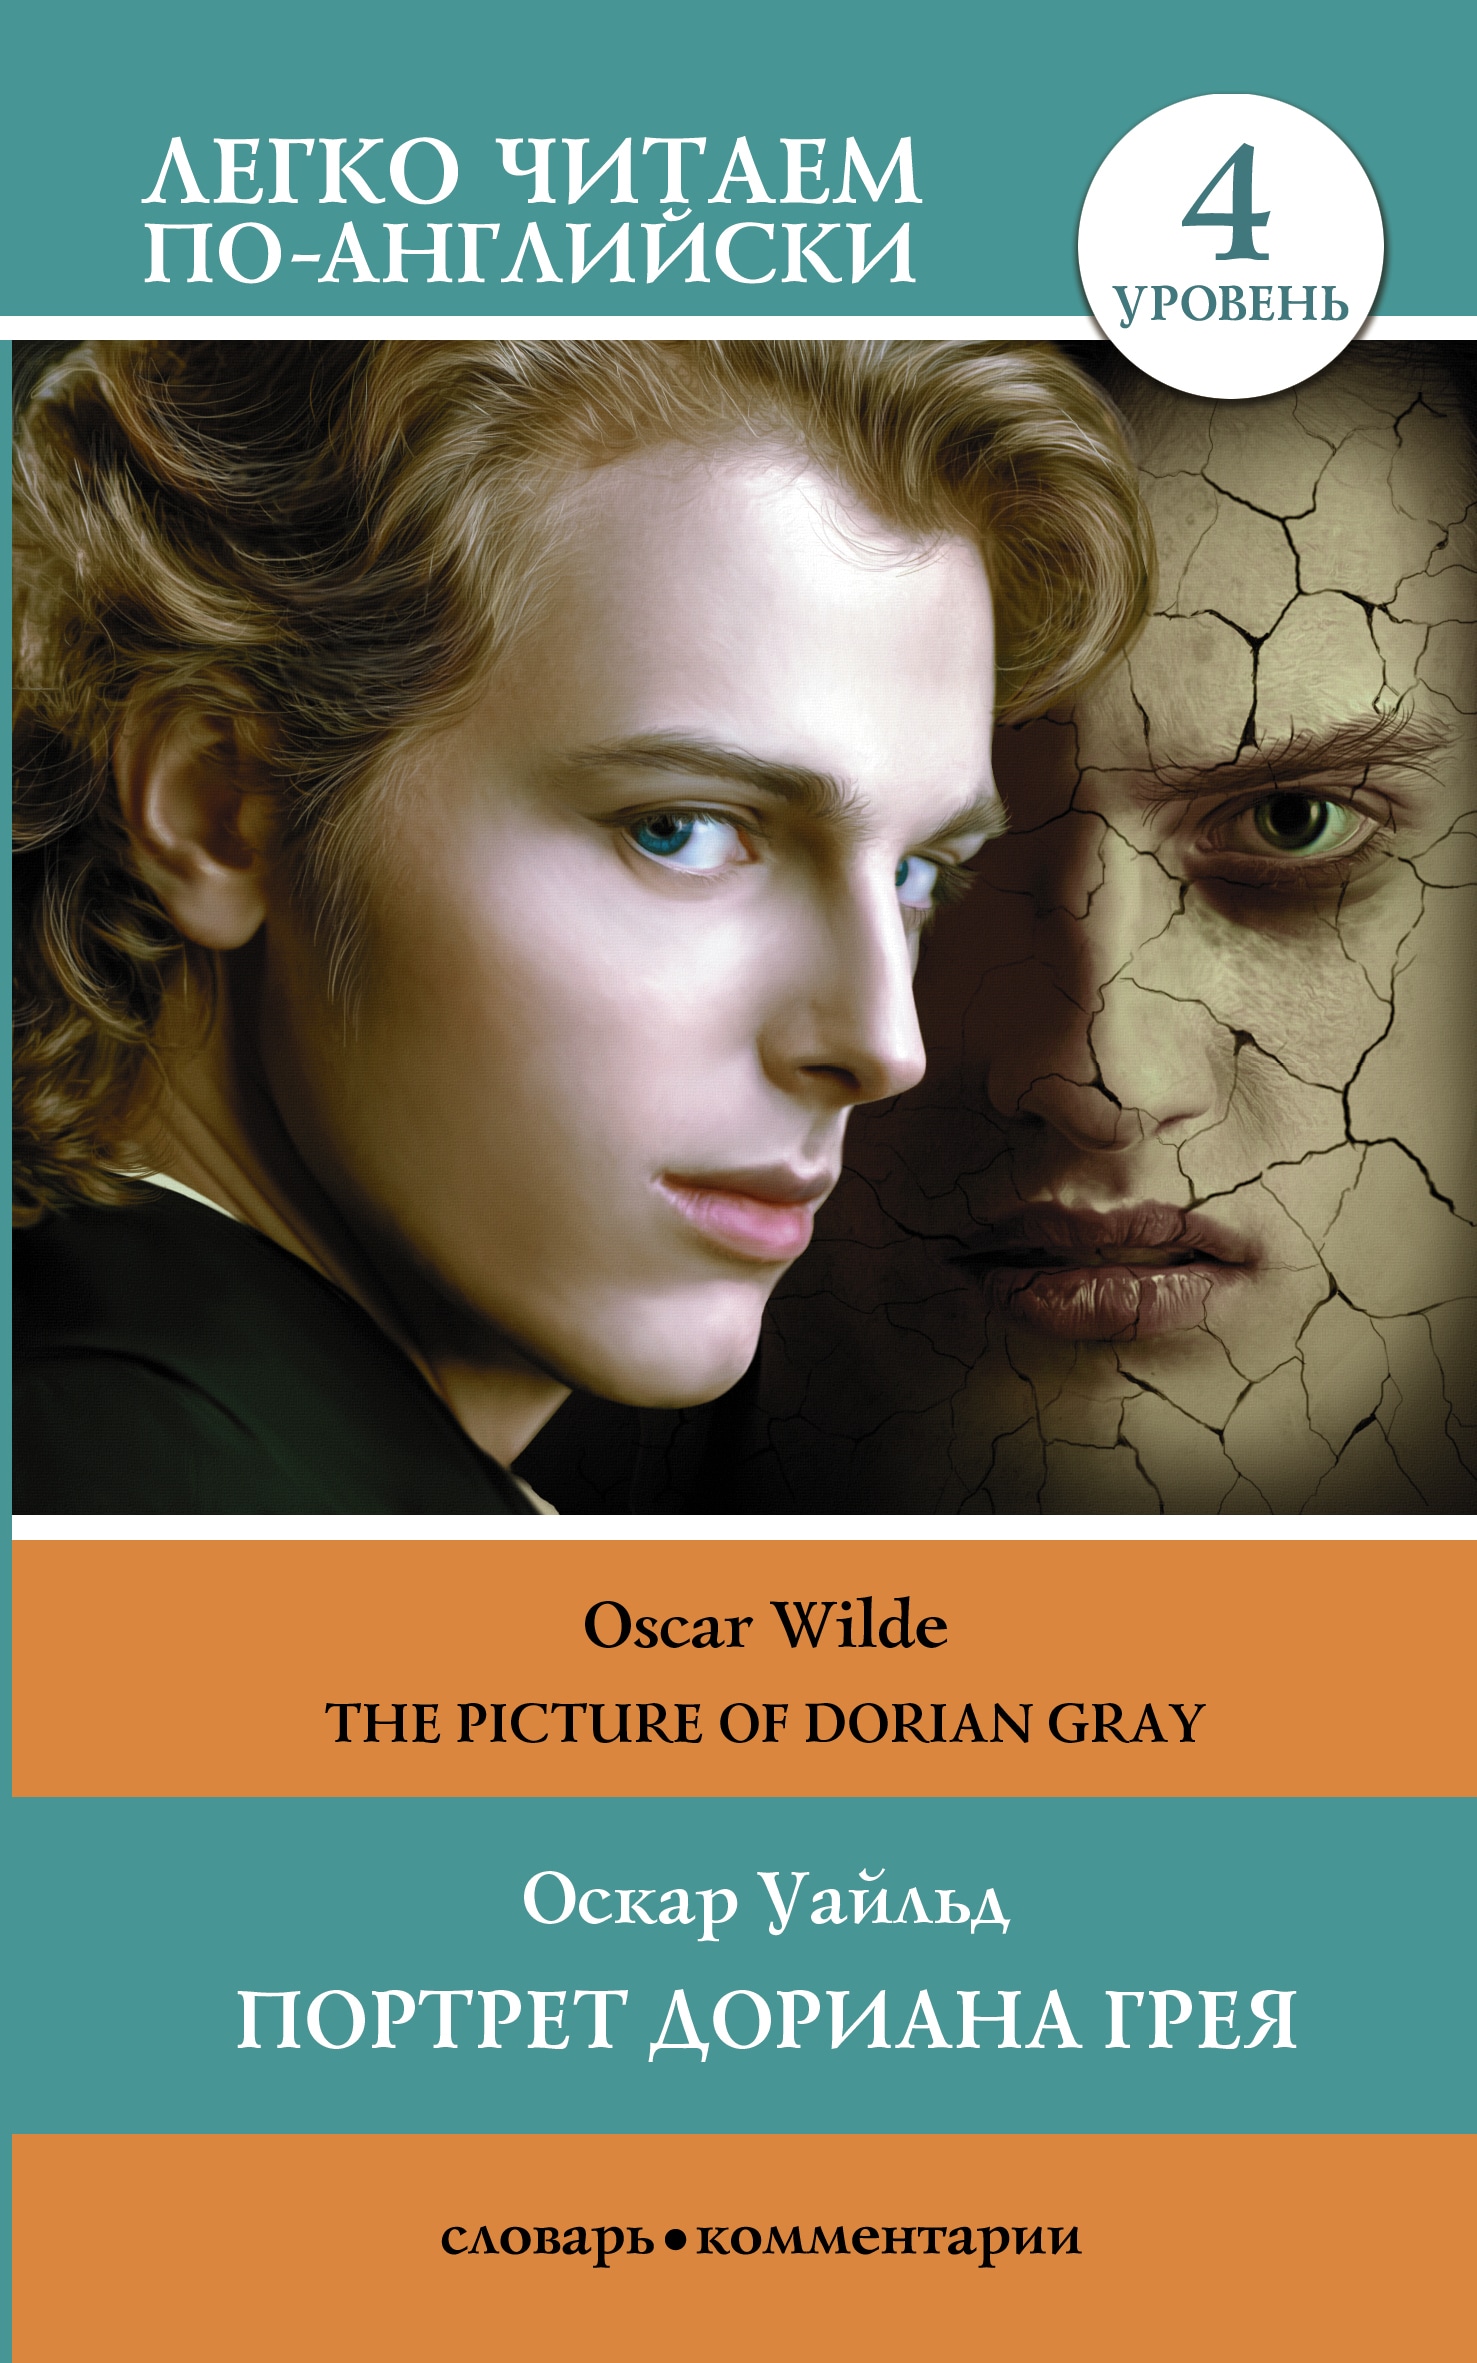 Портрет Дориана Грея. Уровень 4 = The Picture of Dorian Gray